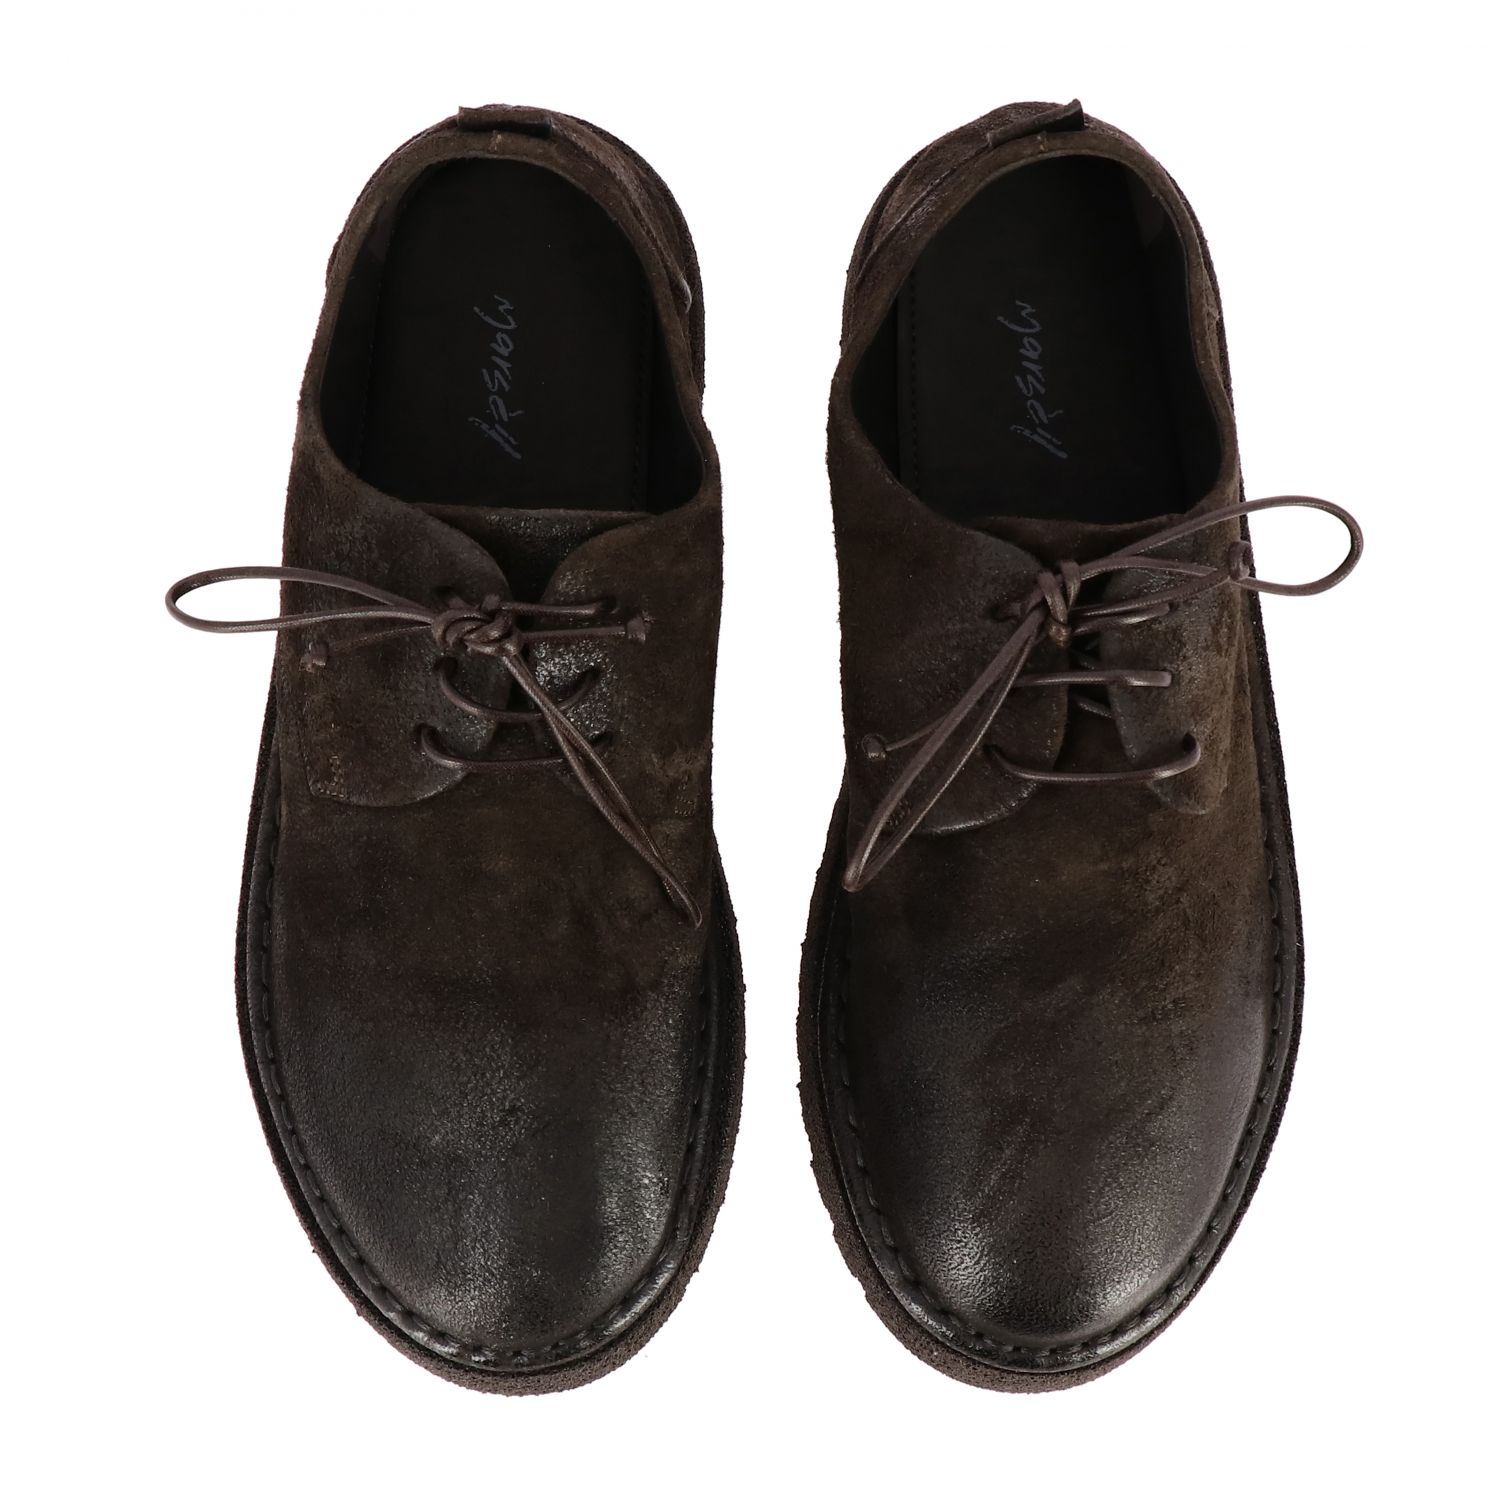 Marsèll Outlet: brogue shoes for men - Dark | Marsèll brogue shoes ...